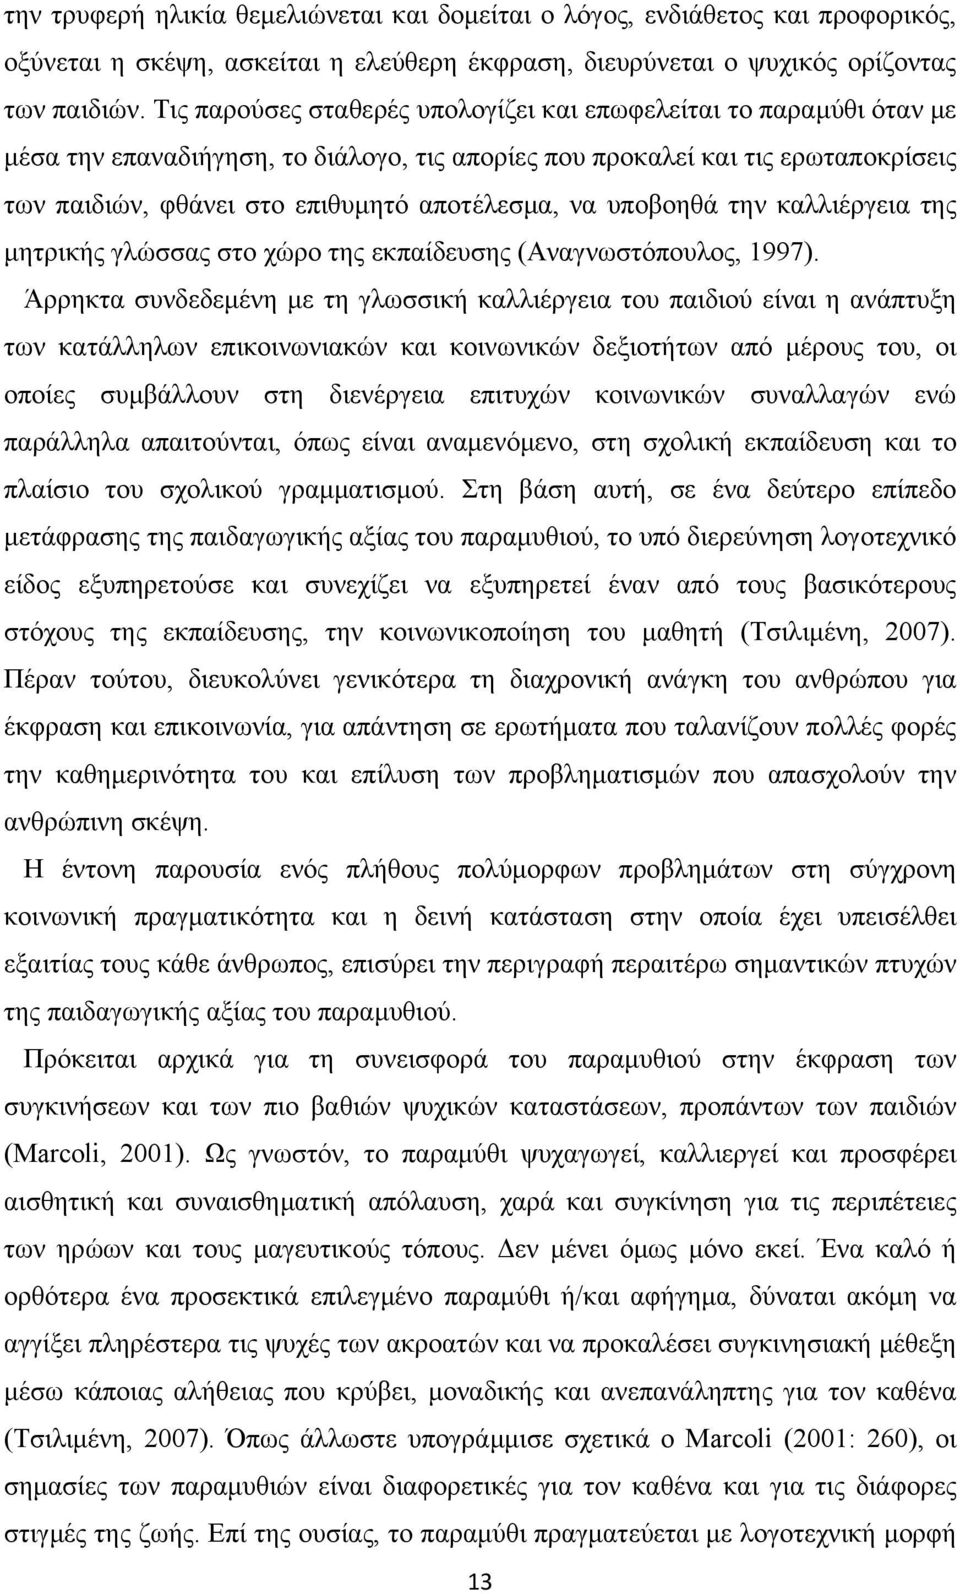 να υποβοηθά την καλλιέργεια της μητρικής γλώσσας στο χώρο της εκπαίδευσης (Αναγνωστόπουλος, 1997).